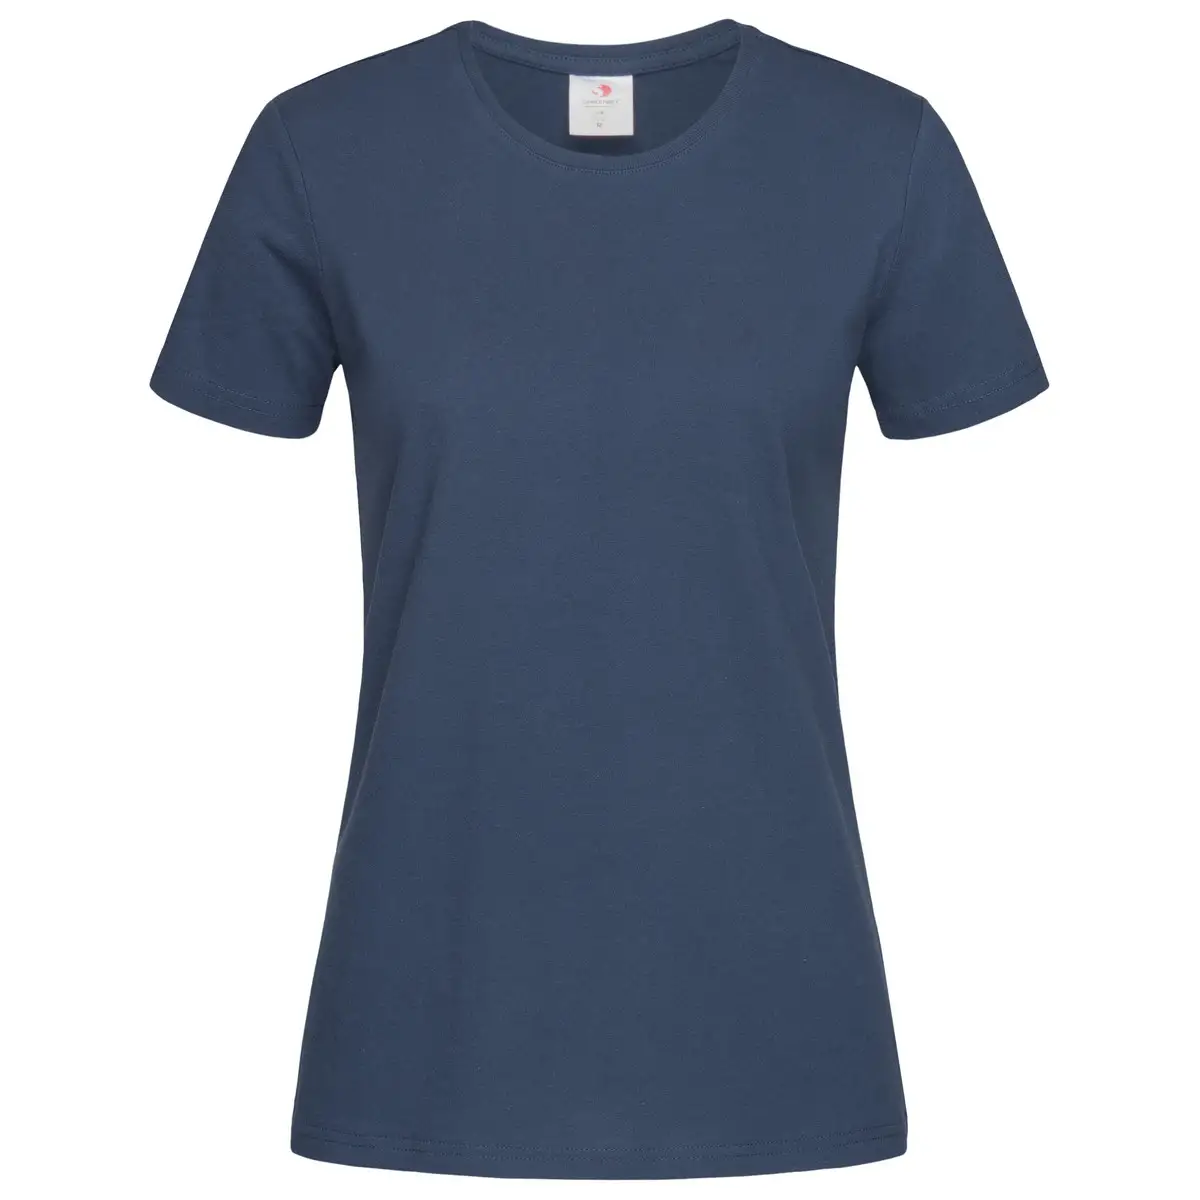 T-Shirt Manica Corta Donna Personalizzata - Stedman